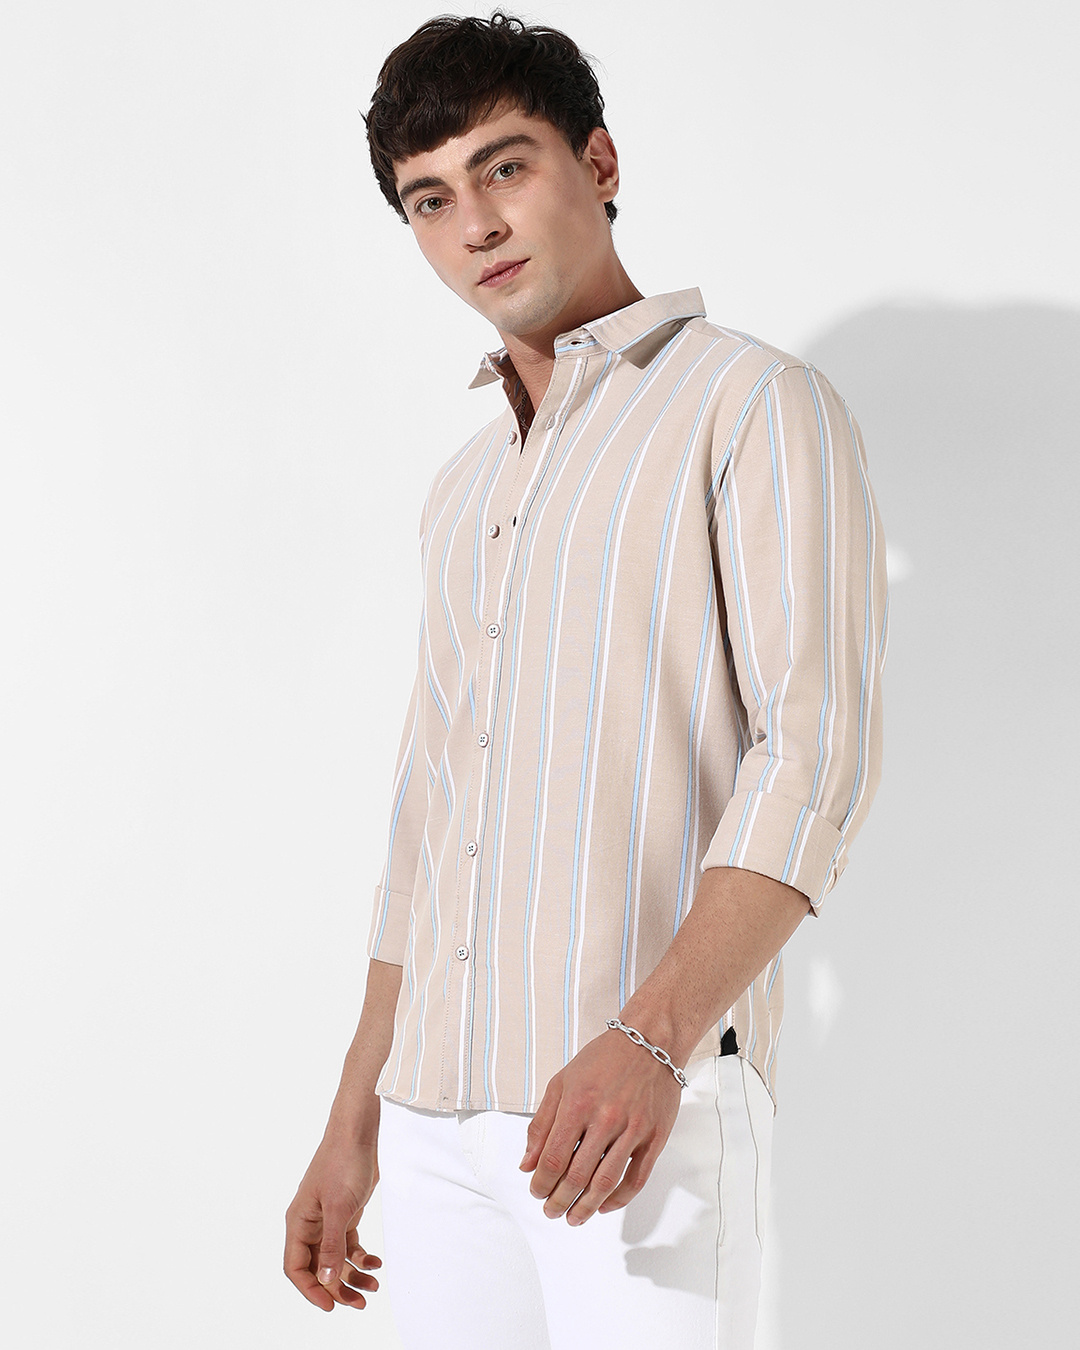 Buy Men's Beige Striped Shirt Online at Bewakoof